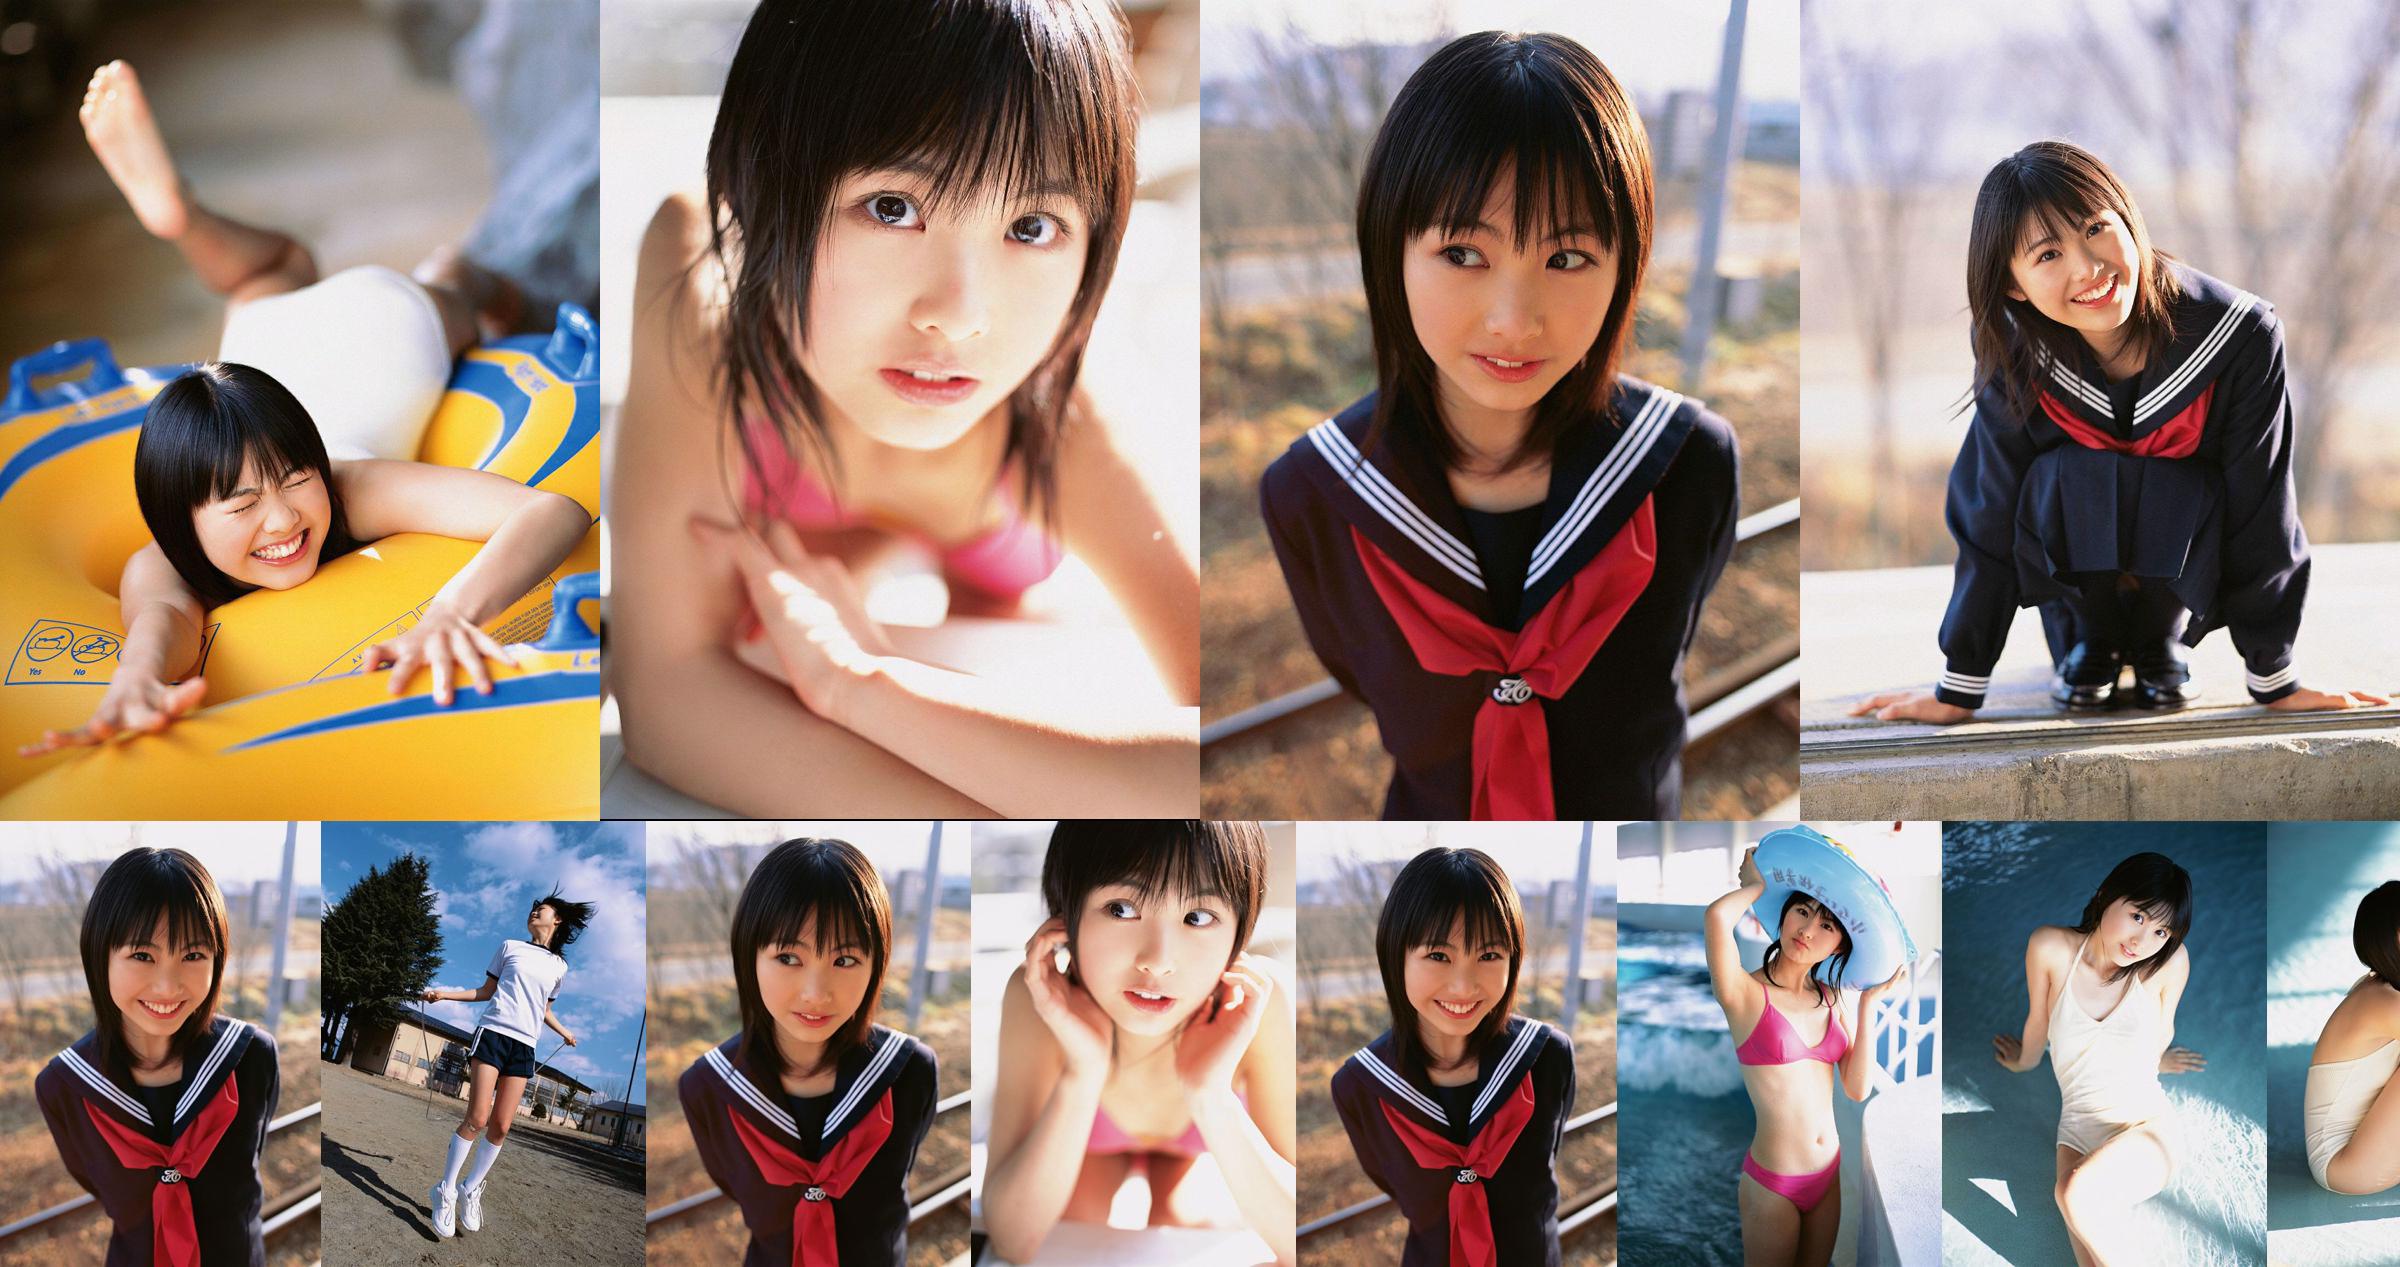 Aya Sakata "¡Chica super guapa-MENOR DE EDAD!" [YS Web] Vol.202 No.f3631b Página 2